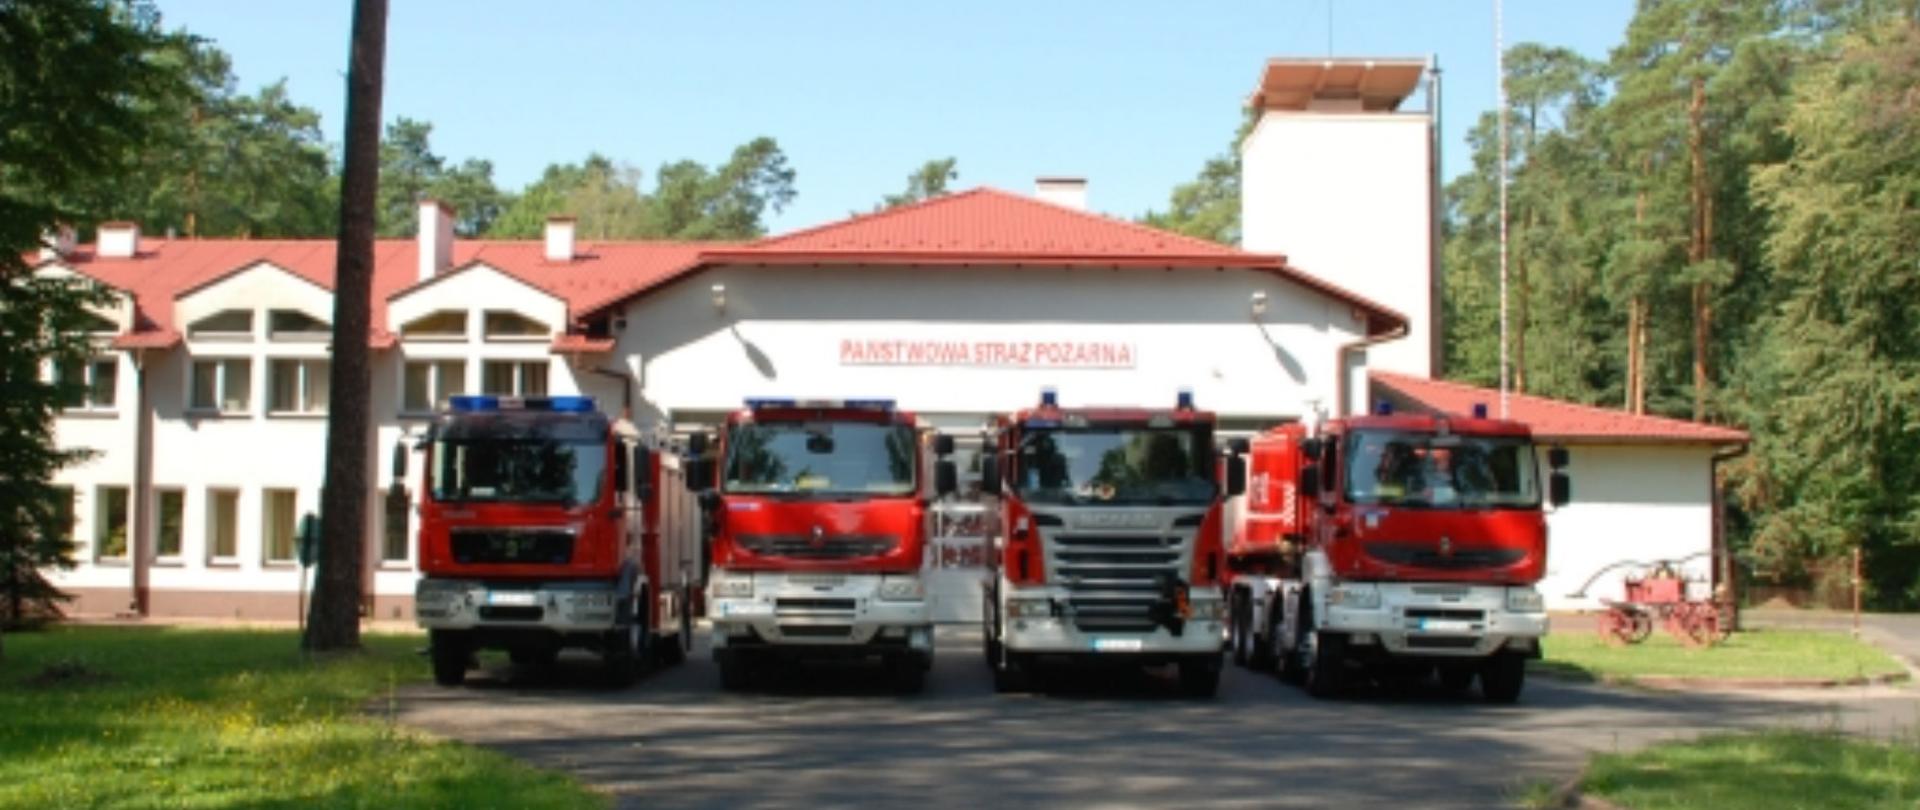 Na zdjęciu widzimy pojazdy pożarnicze w tle widać budynek jednostki ratowniczo-gaśniczej w Nowej Sarzynie.